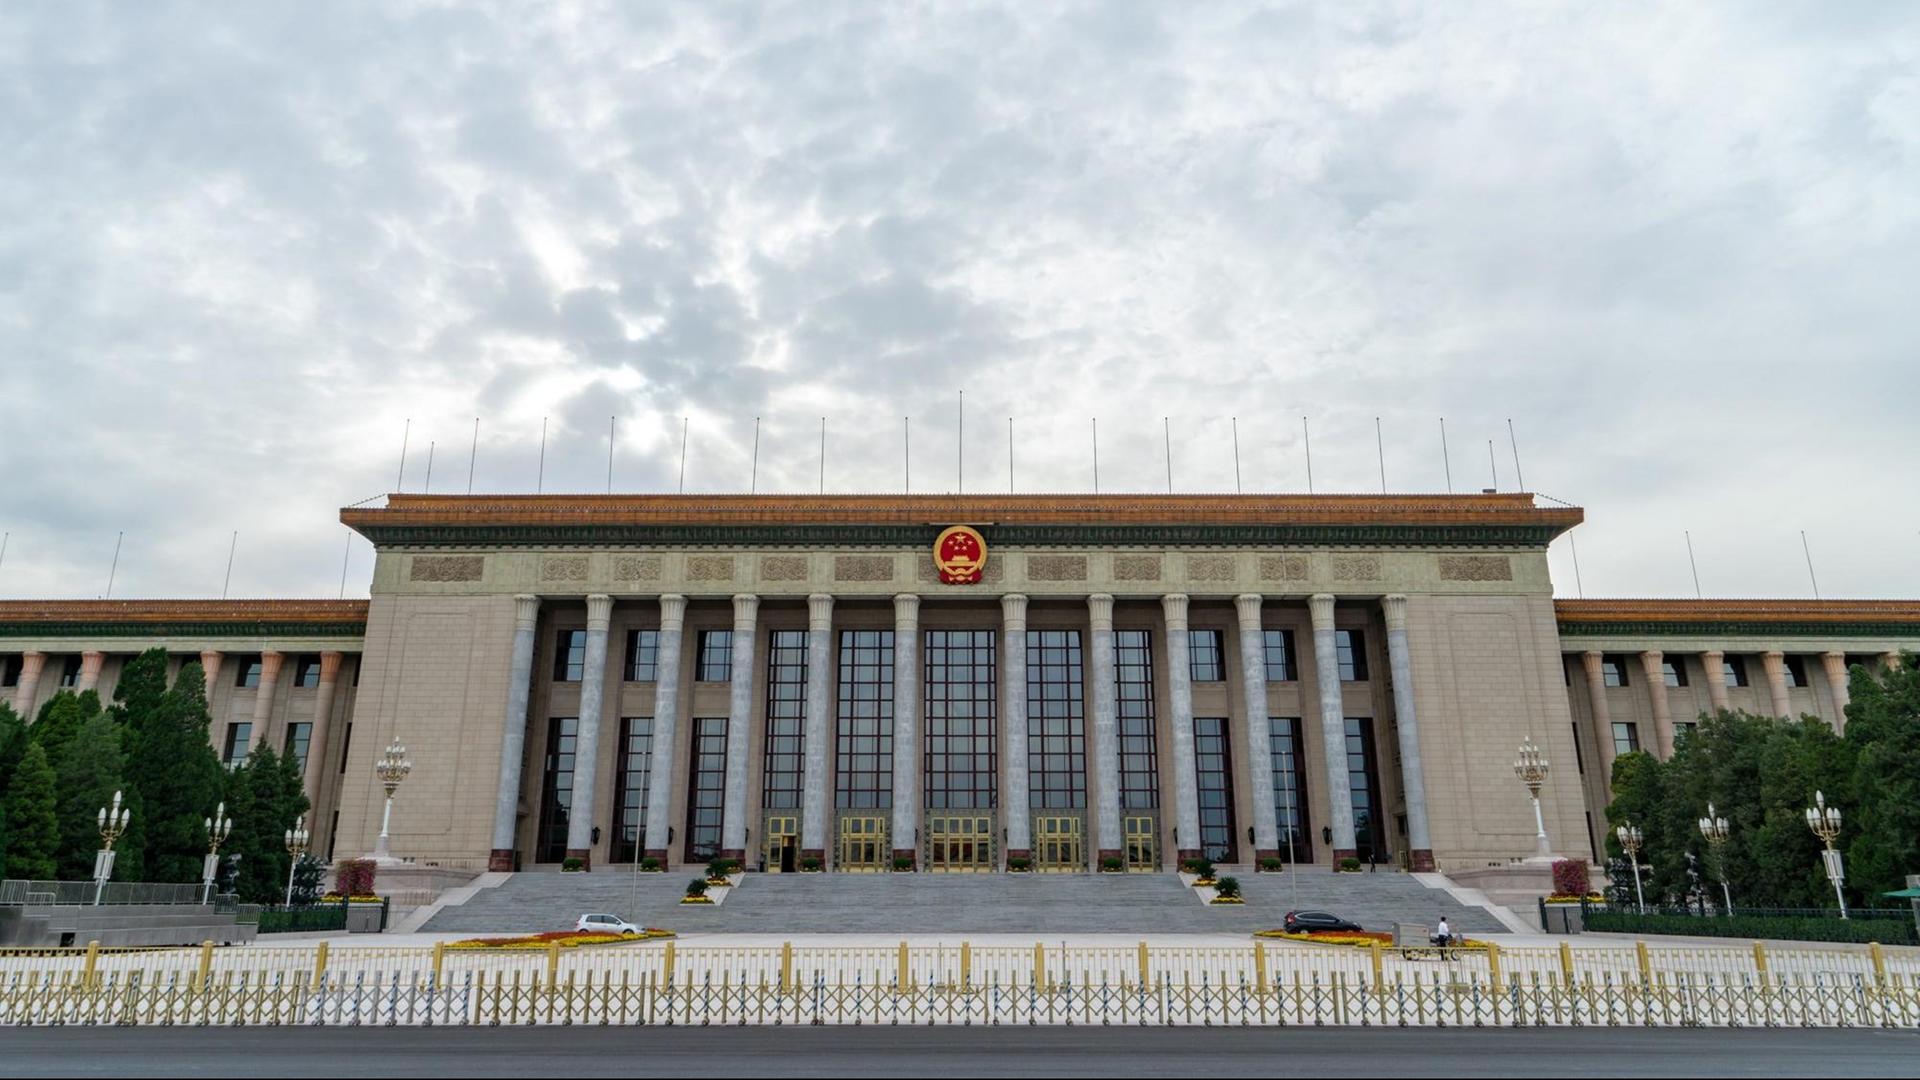 Frontansicht der Großen Halle des Volkes am Tiananmen-Platz in Peking, dem Sitz des Nationalen Volkskongresses.